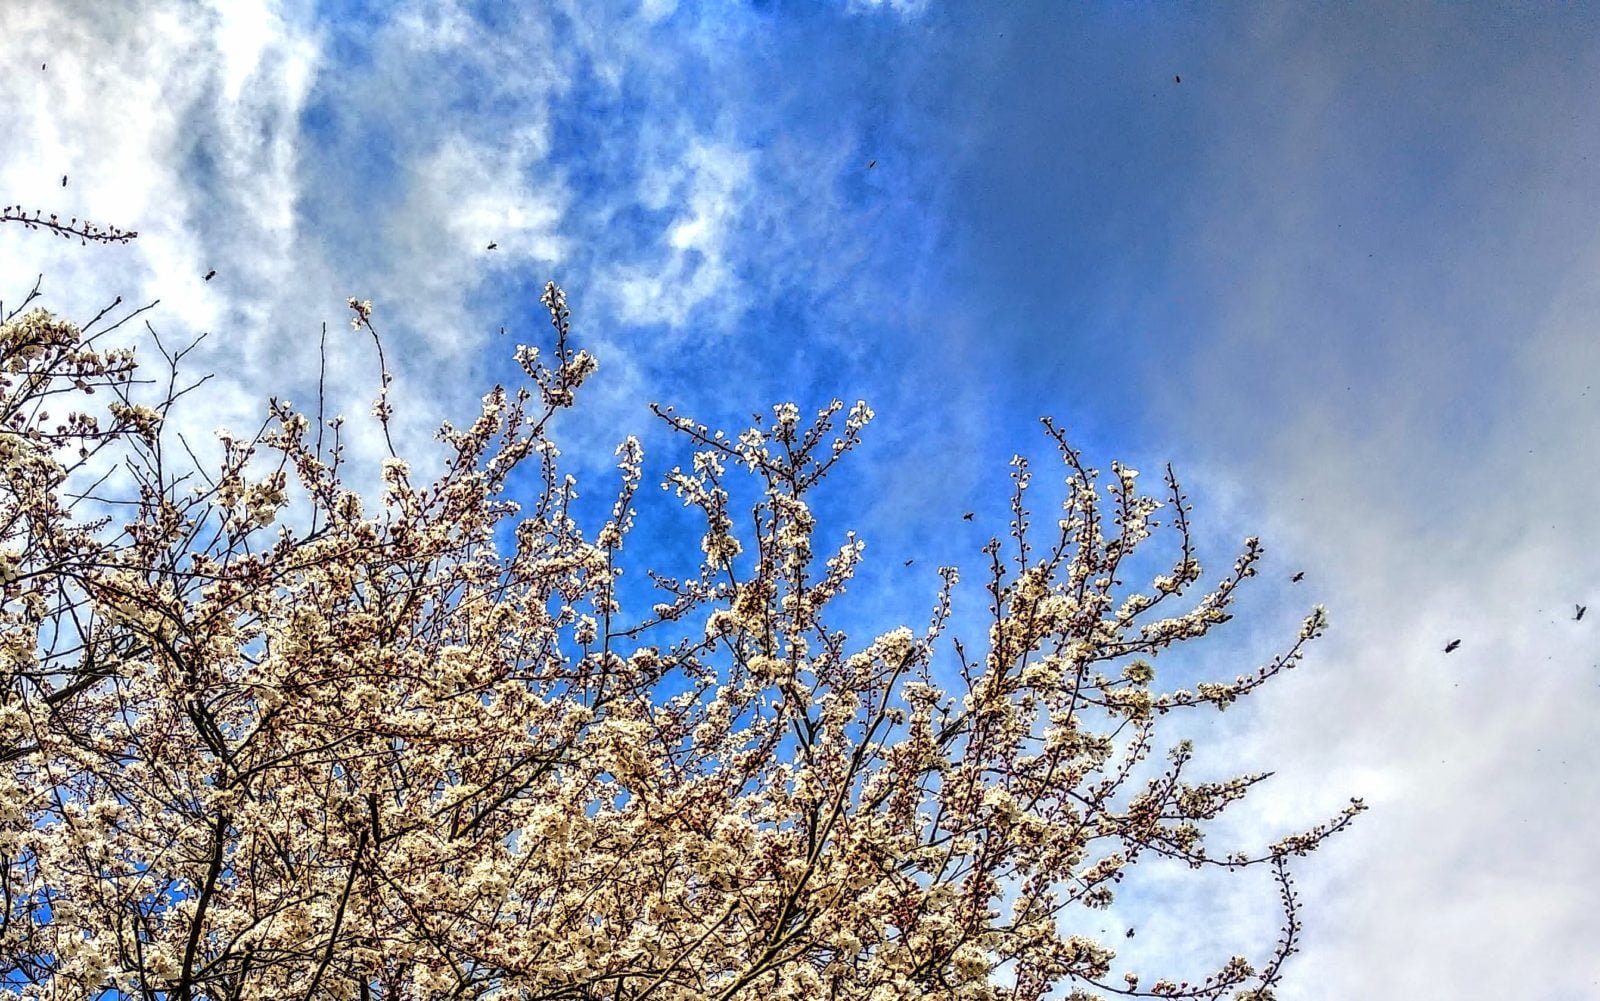 Griachal (Kriecherl, Kirschpflaume, Prunus cerasifera; Kirschpflaumen blühen weiß, innen zartrosa sehr früh im Jahr ein bis zwei Wochen vor dem Schlehdorn, duften nach Blütenhonig und sind eine sehr wichtige erste Nektar-Nahrungsquelle für Honigbienen.)